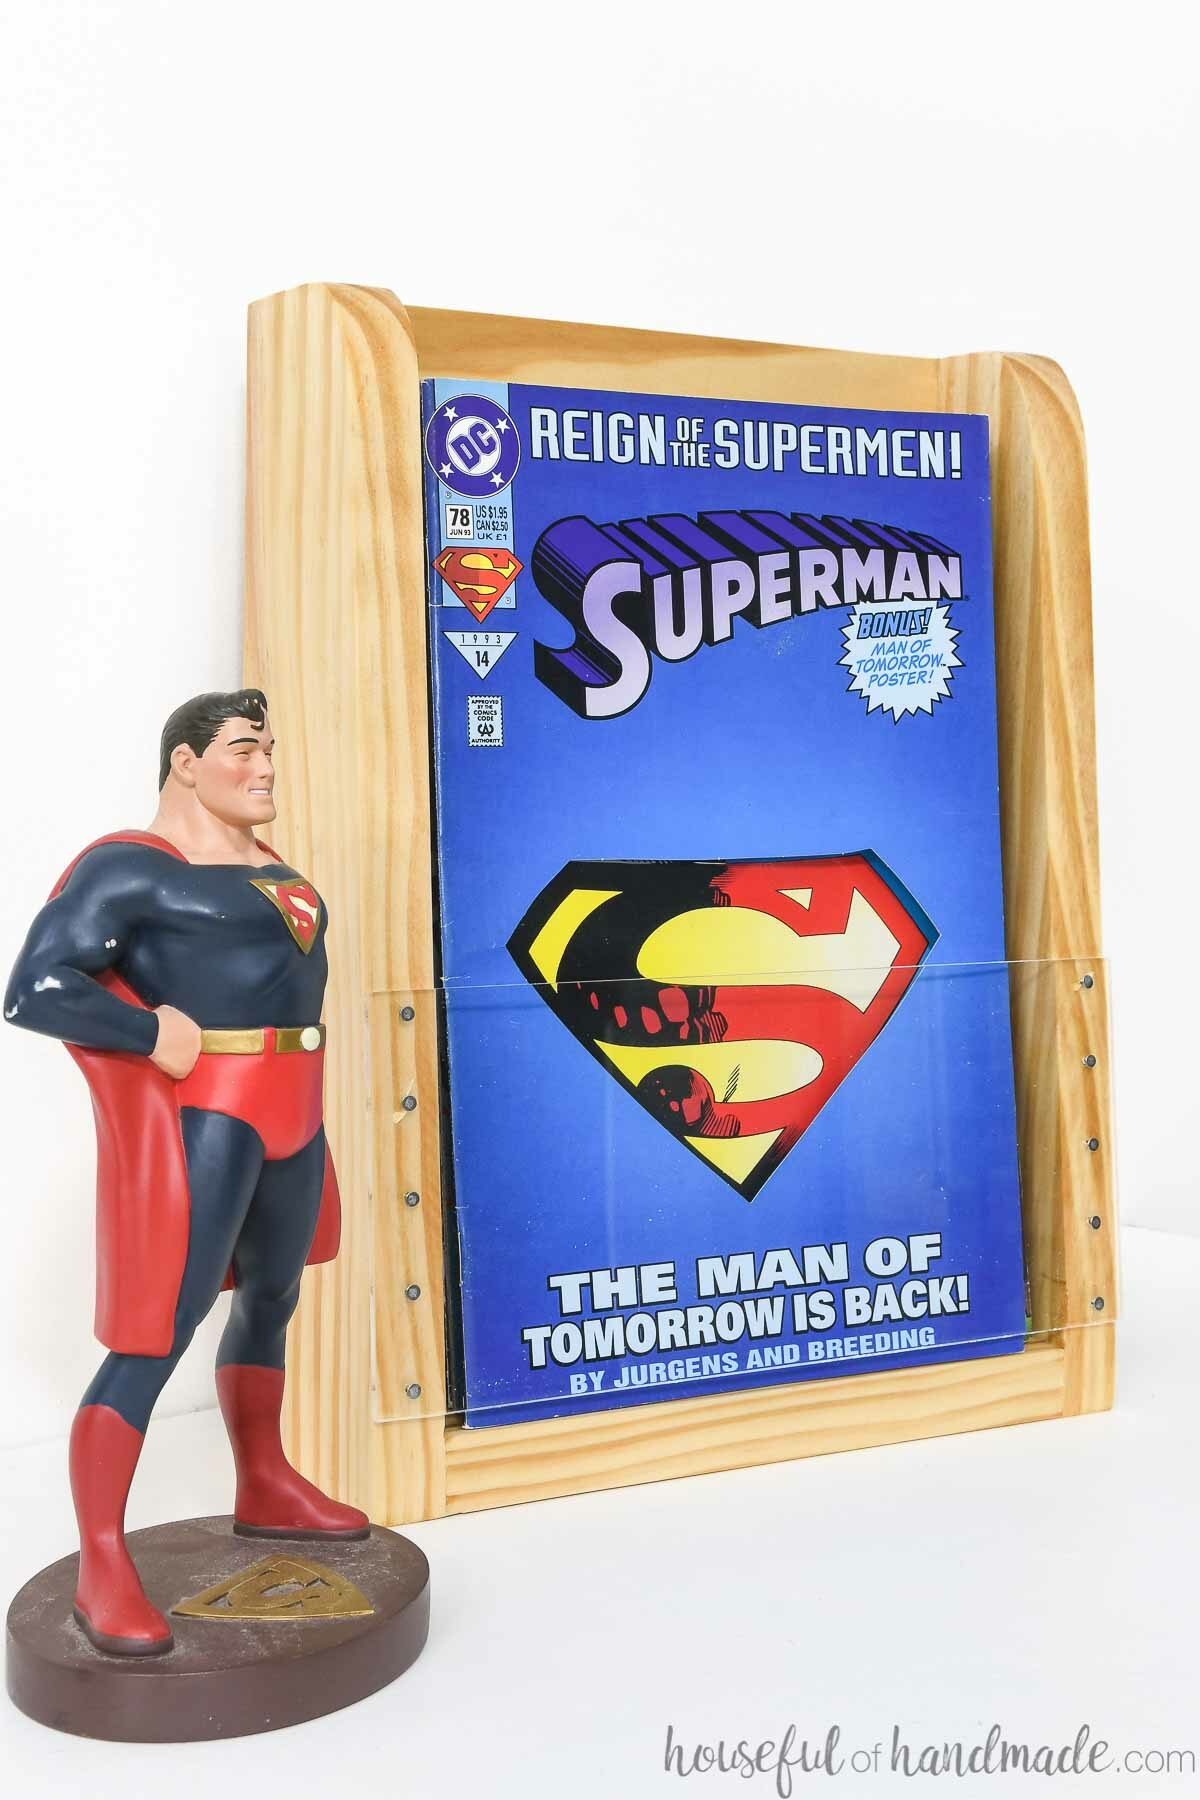 Superman comic book in a comic book display shelf next to a superman figure. 